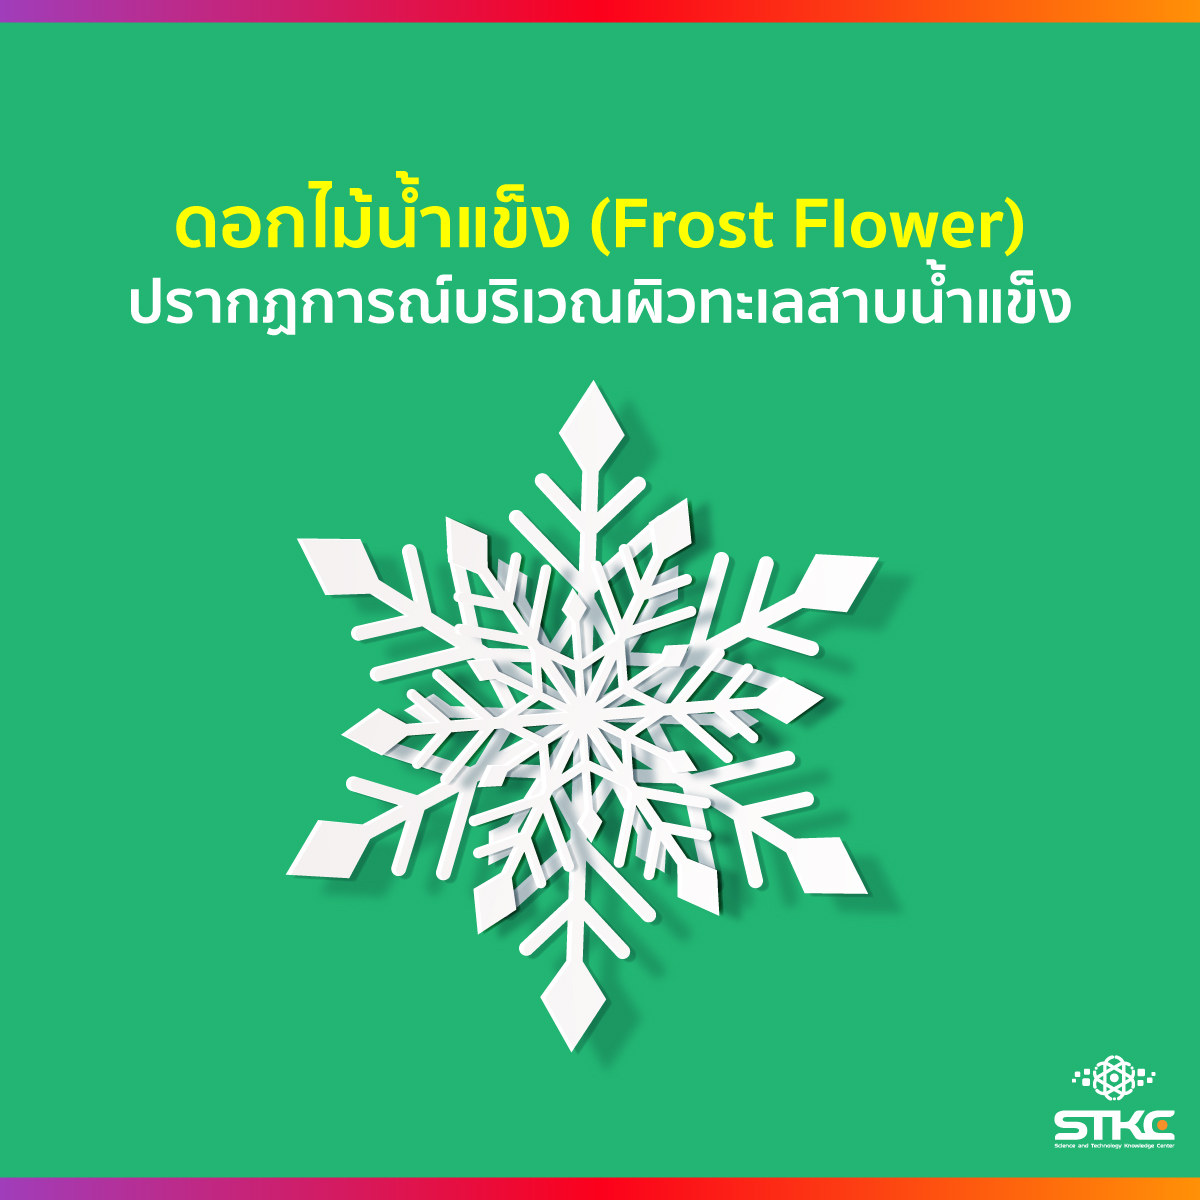 ดอกไม้น้ำแข็ง (Frost Flower) ปรากฏการณ์ธรรมชาติบริเวณผิวทะเลสาปน้ำแข็ง